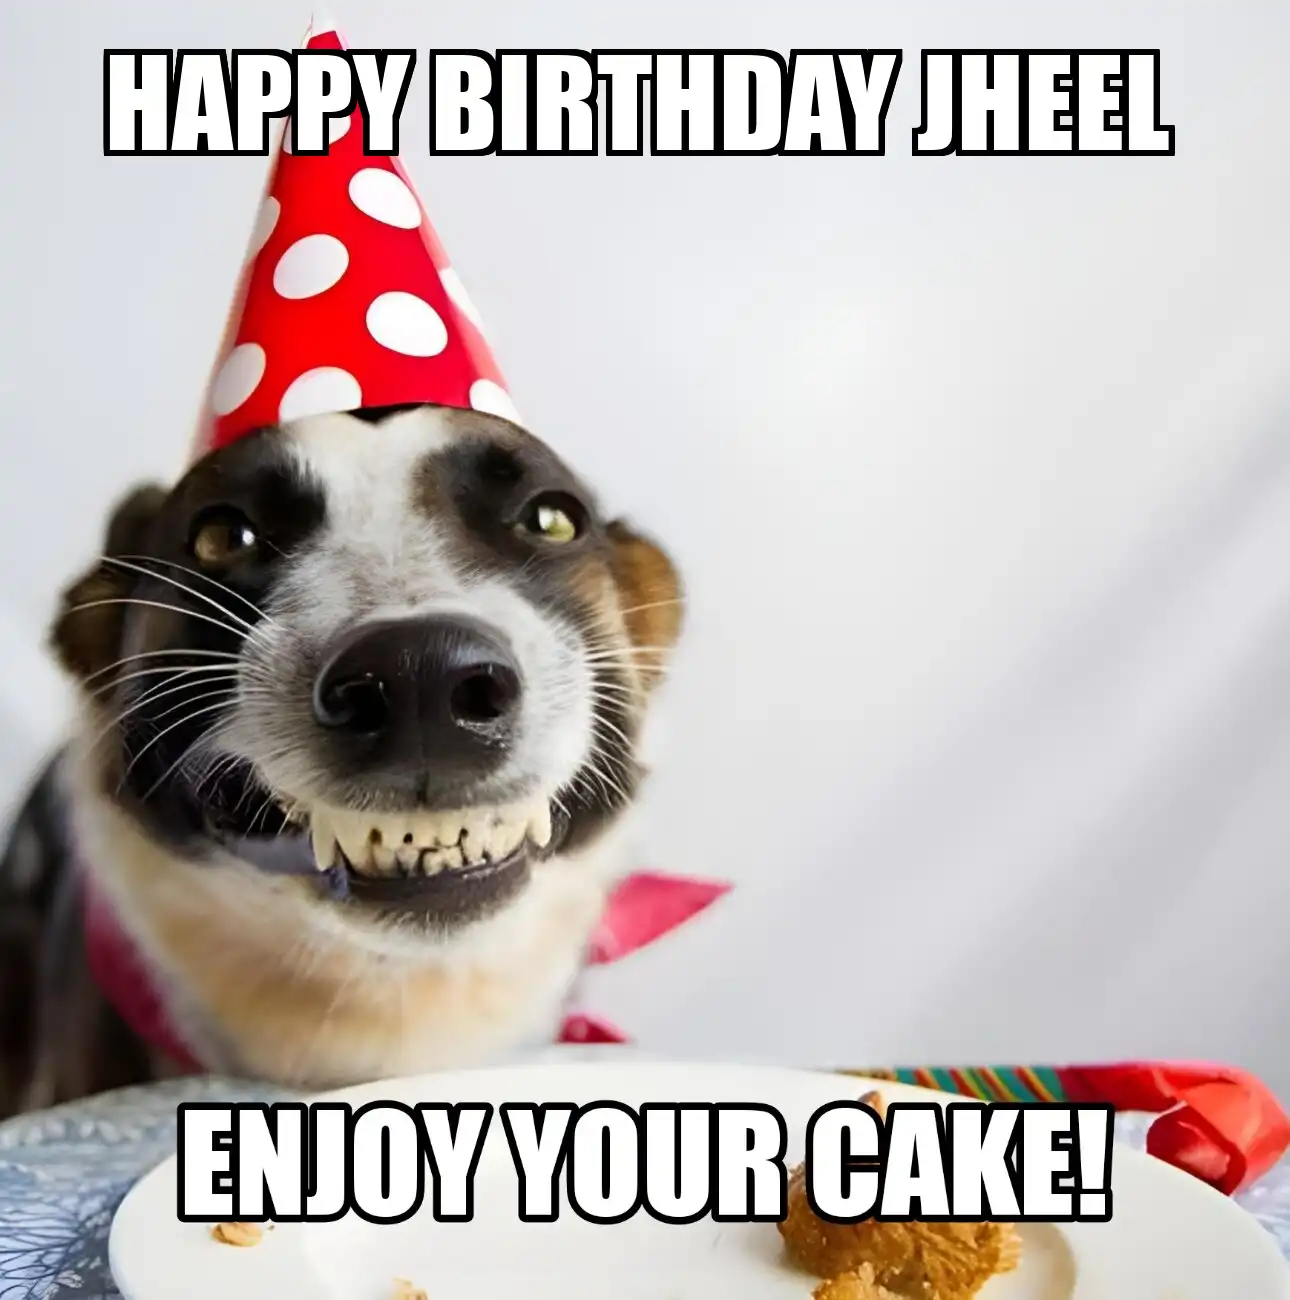 Happy Birthday Jheel Enjoy Your Cake Dog Meme